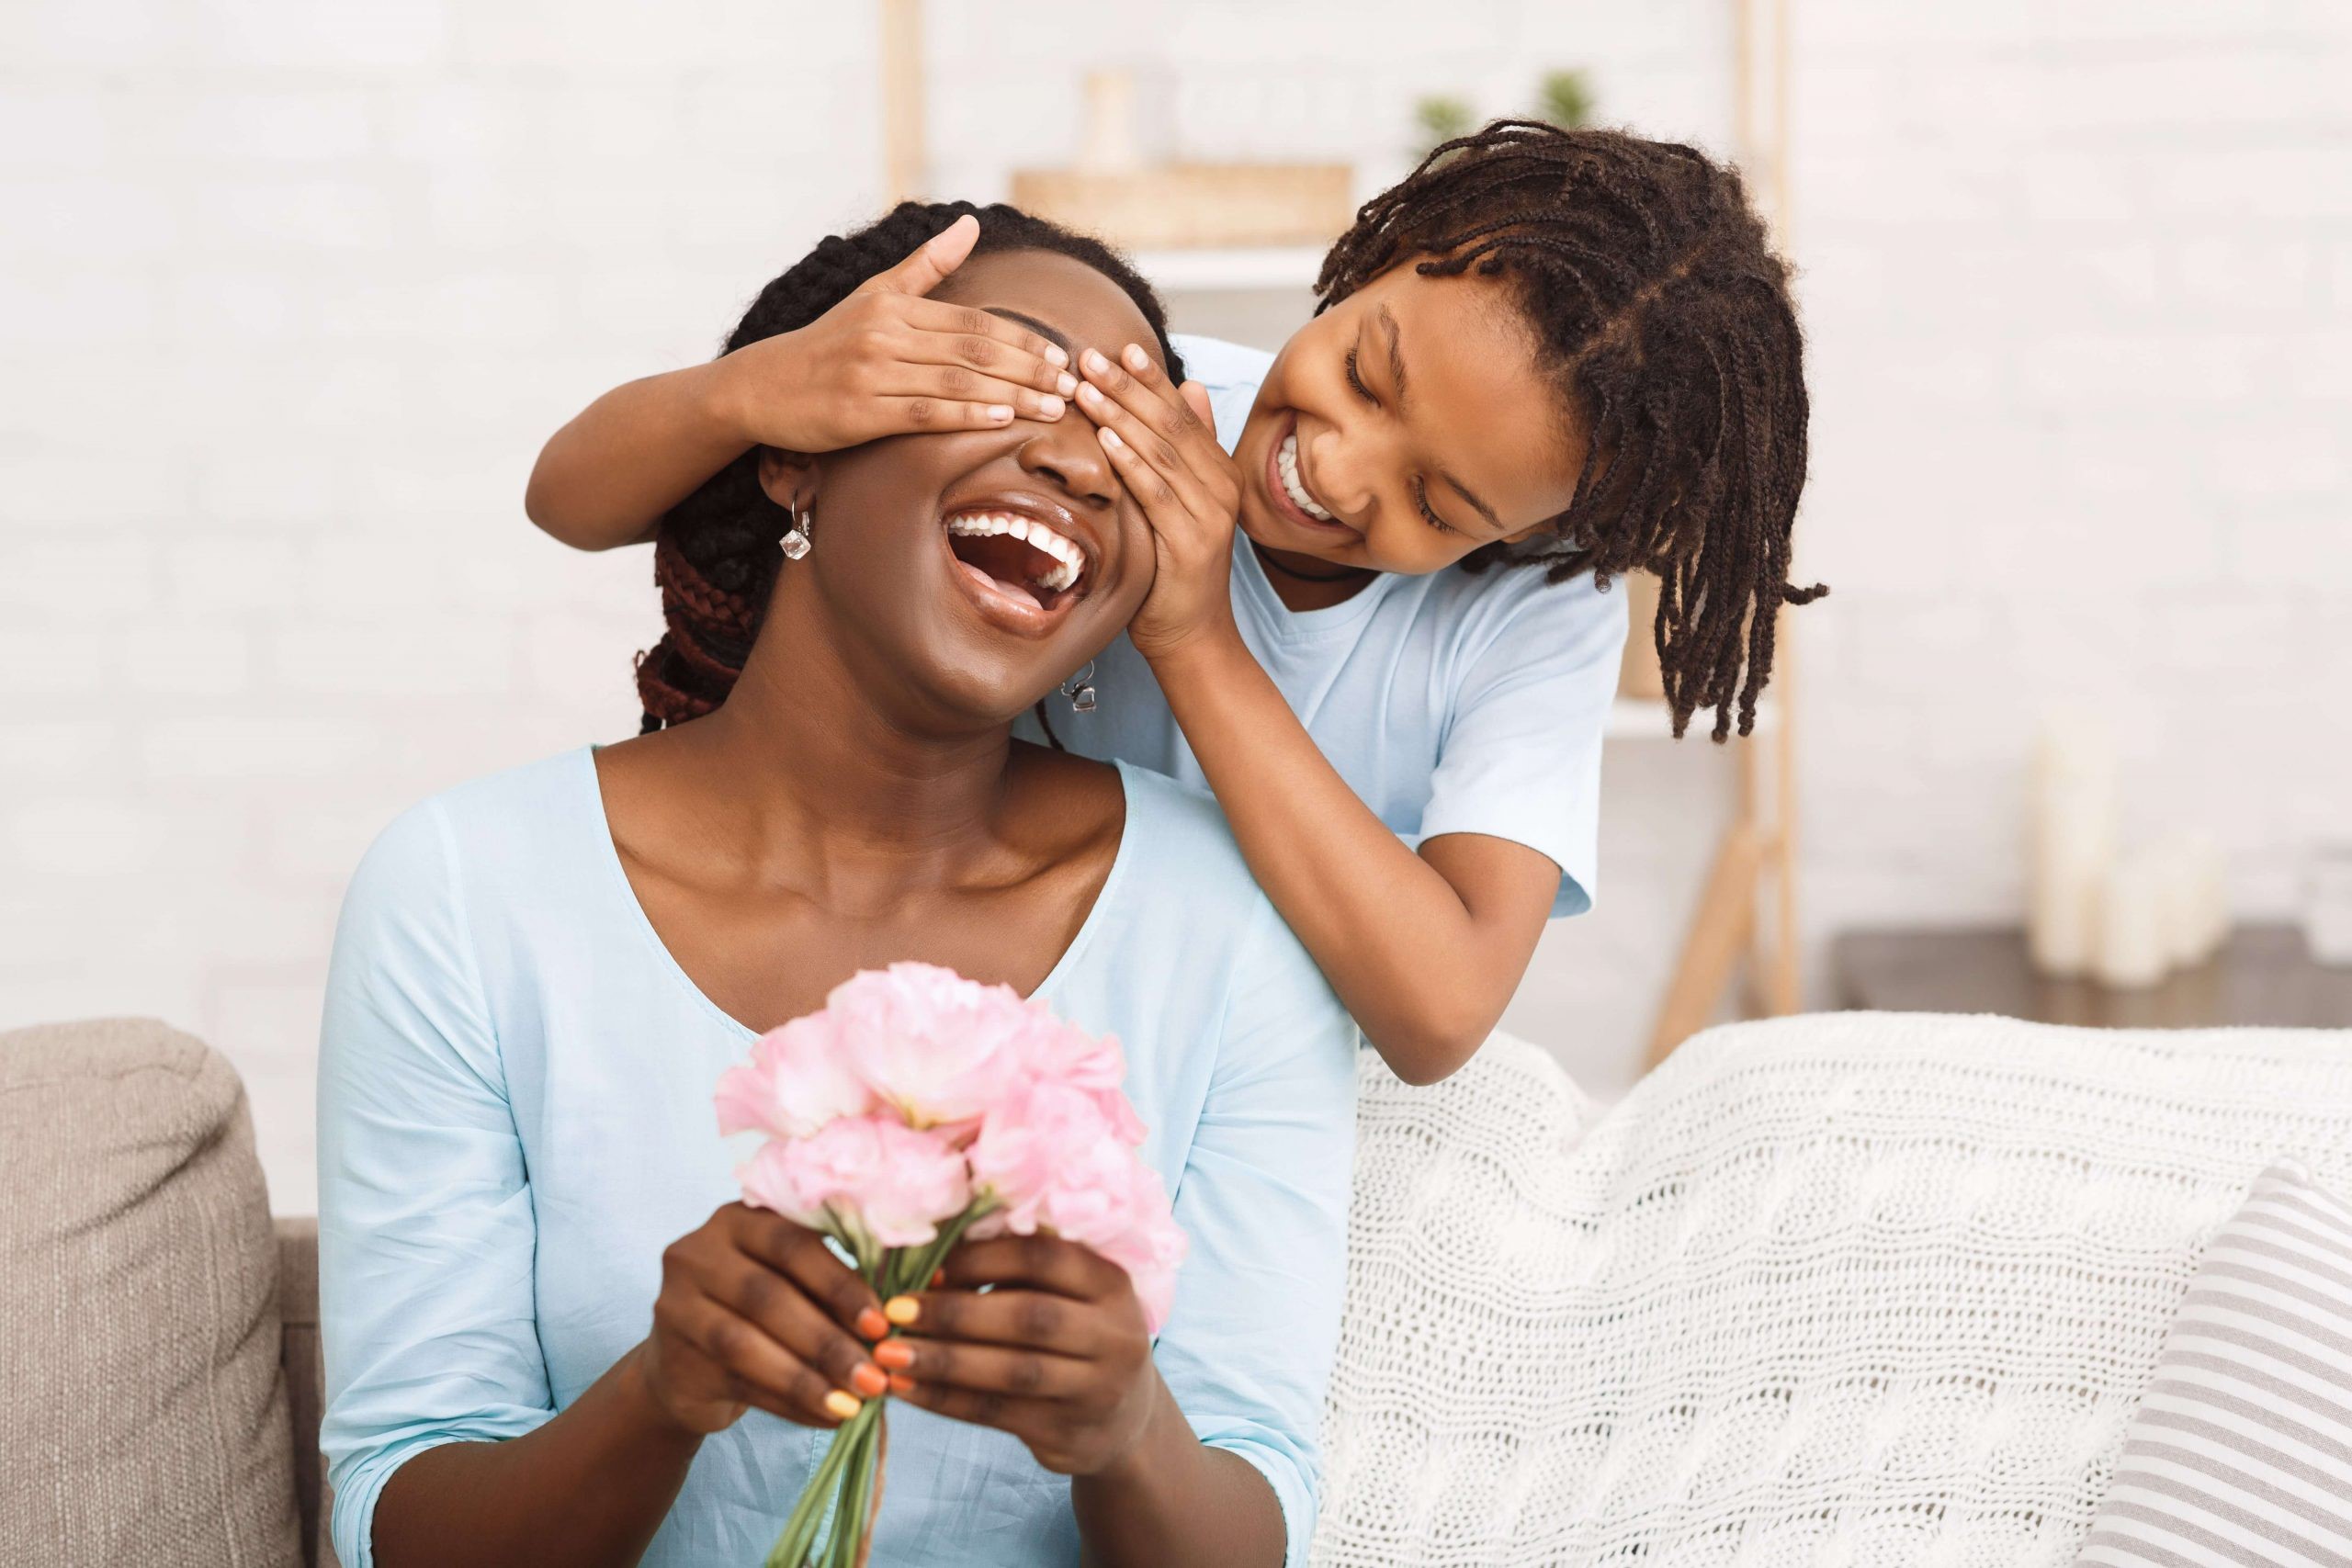 O Dia das Mães, originalmente, é uma data para ressaltar o amor e a gratidão. Uma data que não significa apenas comprar presentes caros, muitas vezes acima das posses de quem os oferece / GB Imagem